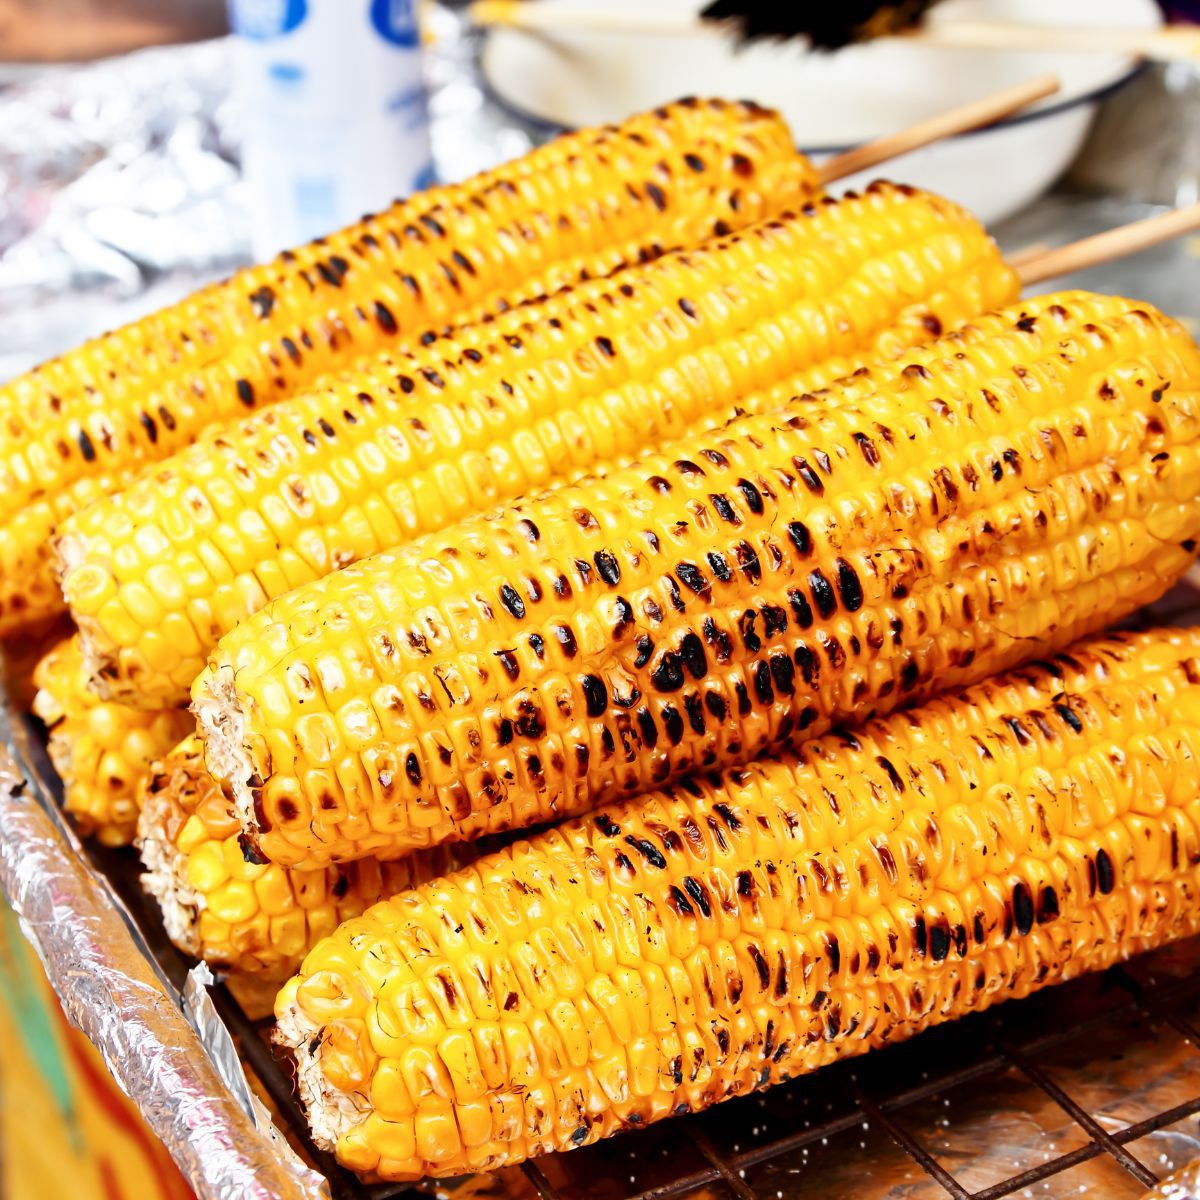 Квадратное изображение жареной кукурузы на початках с деревянными шпажками.